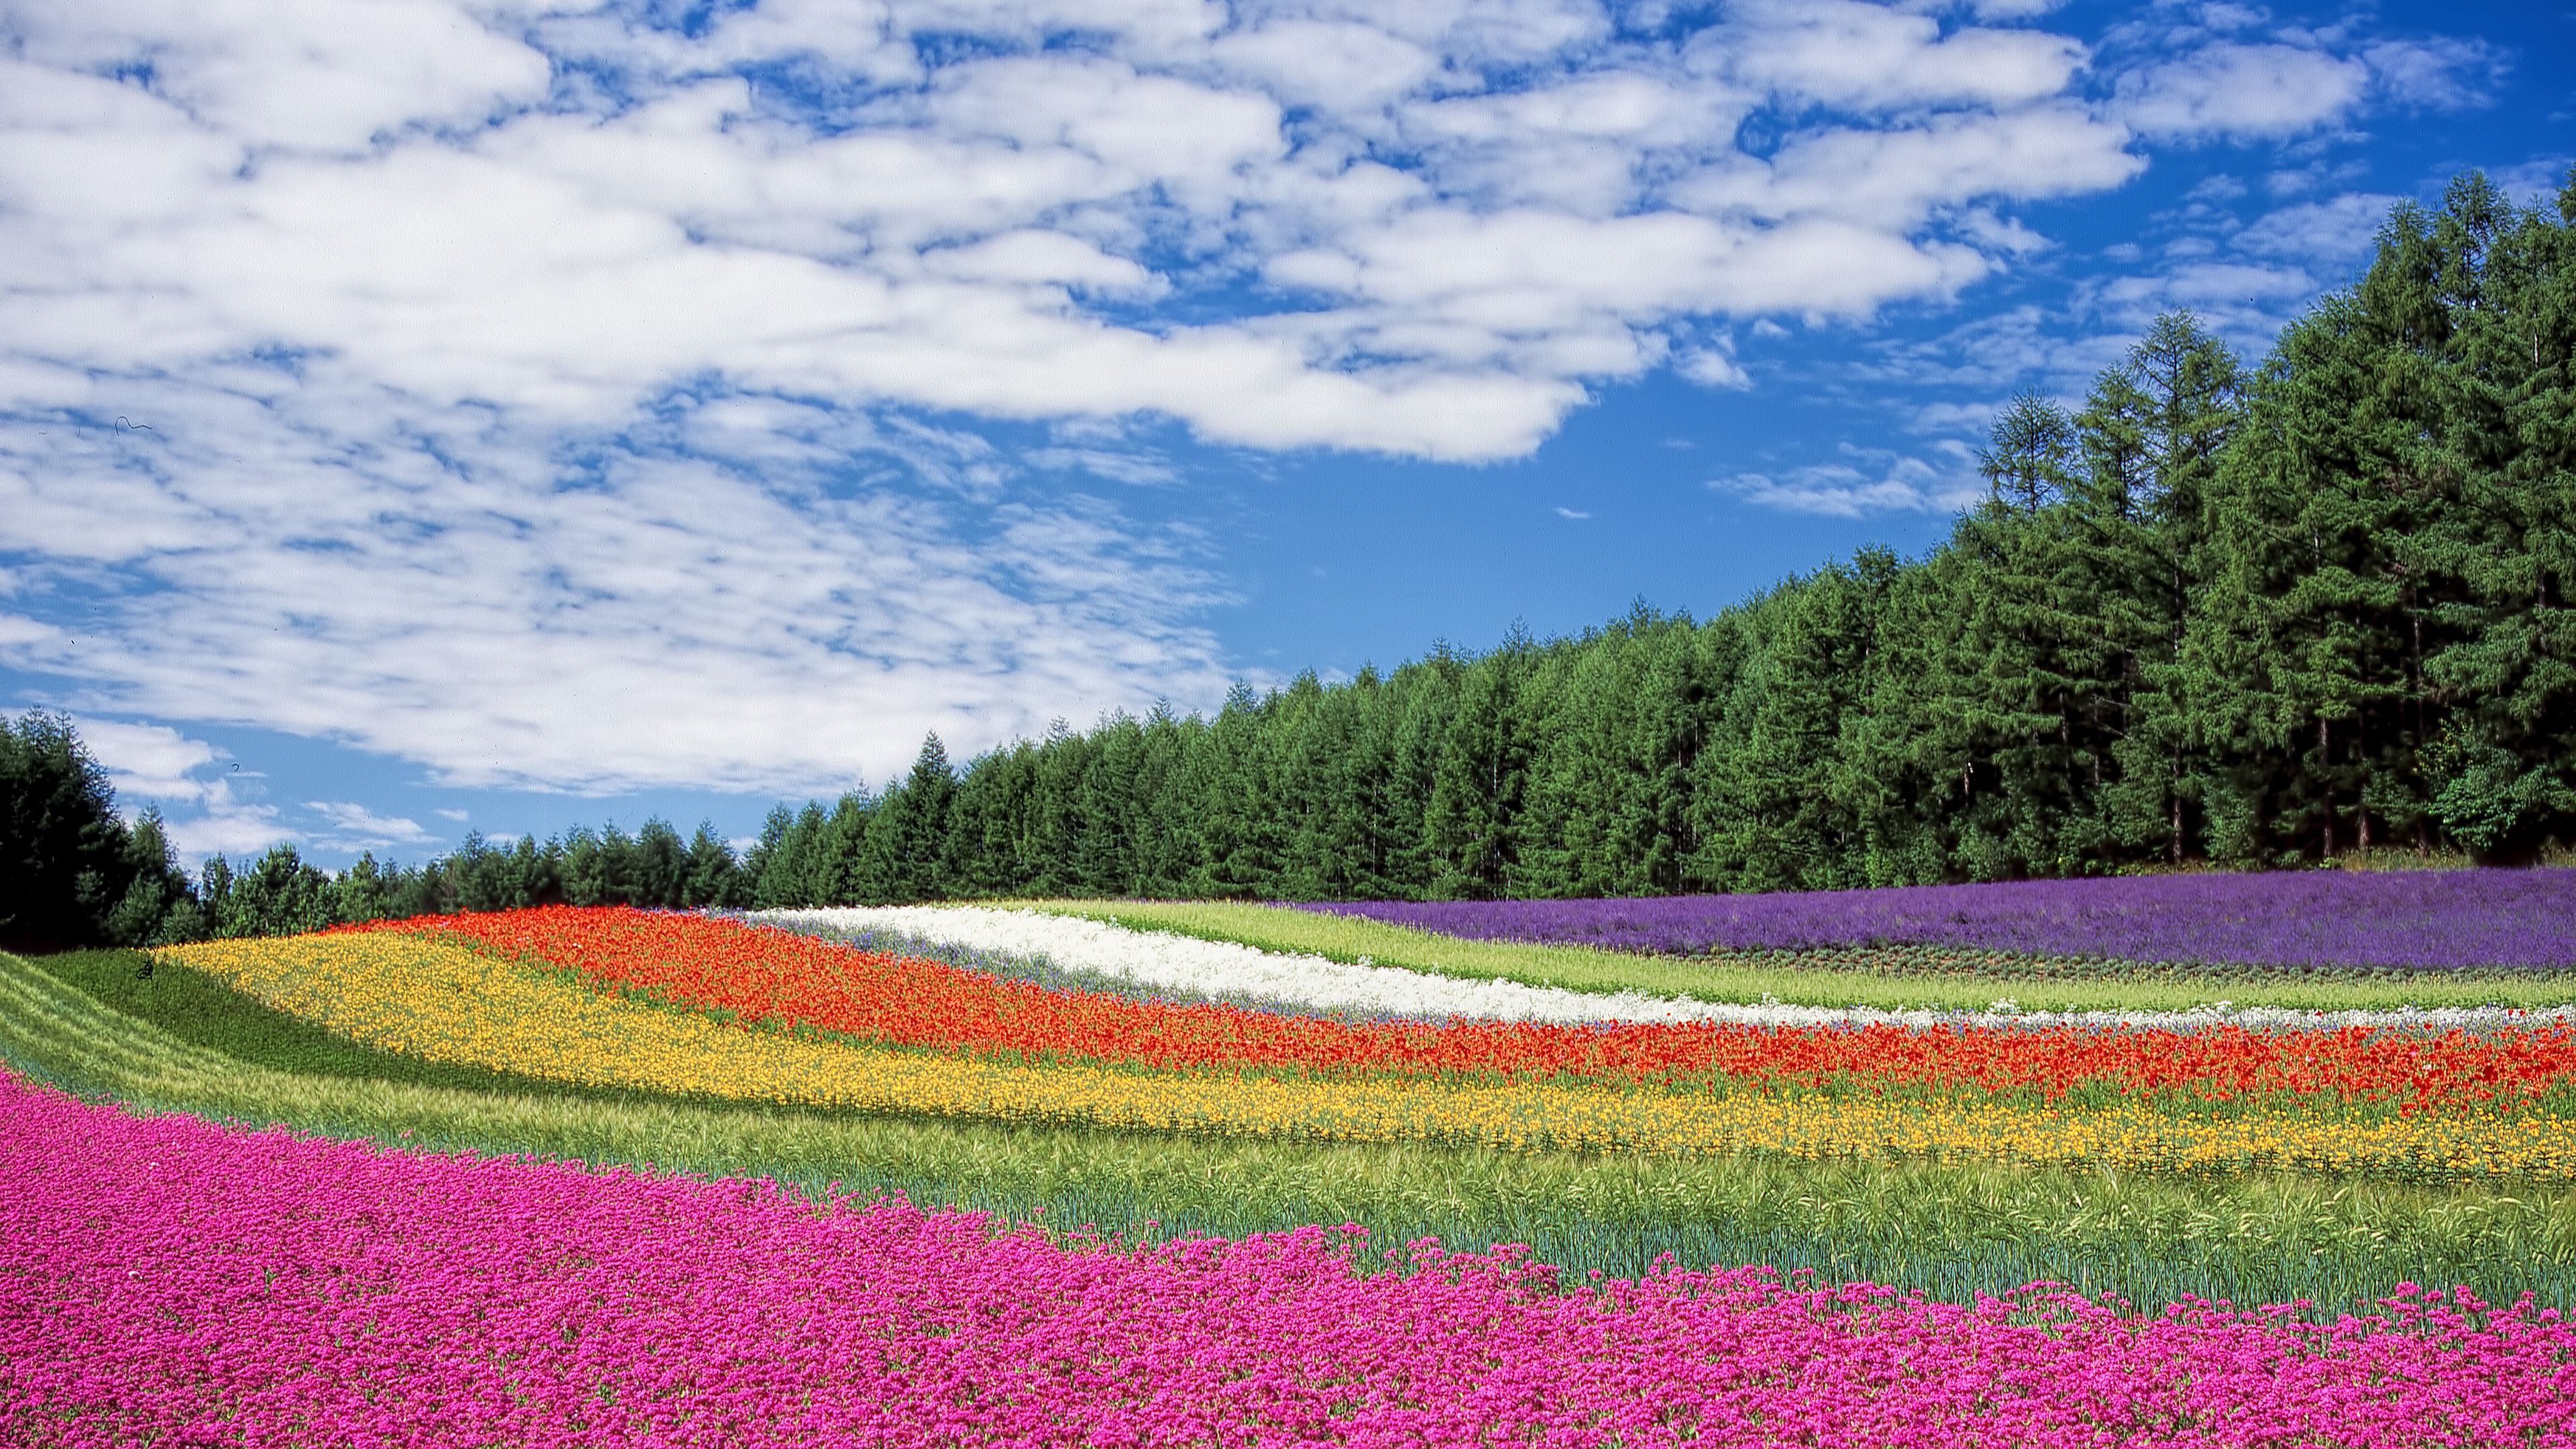 Download wallpaper 3840x2160 hokkaido, japan, flowers, field 4k uhd